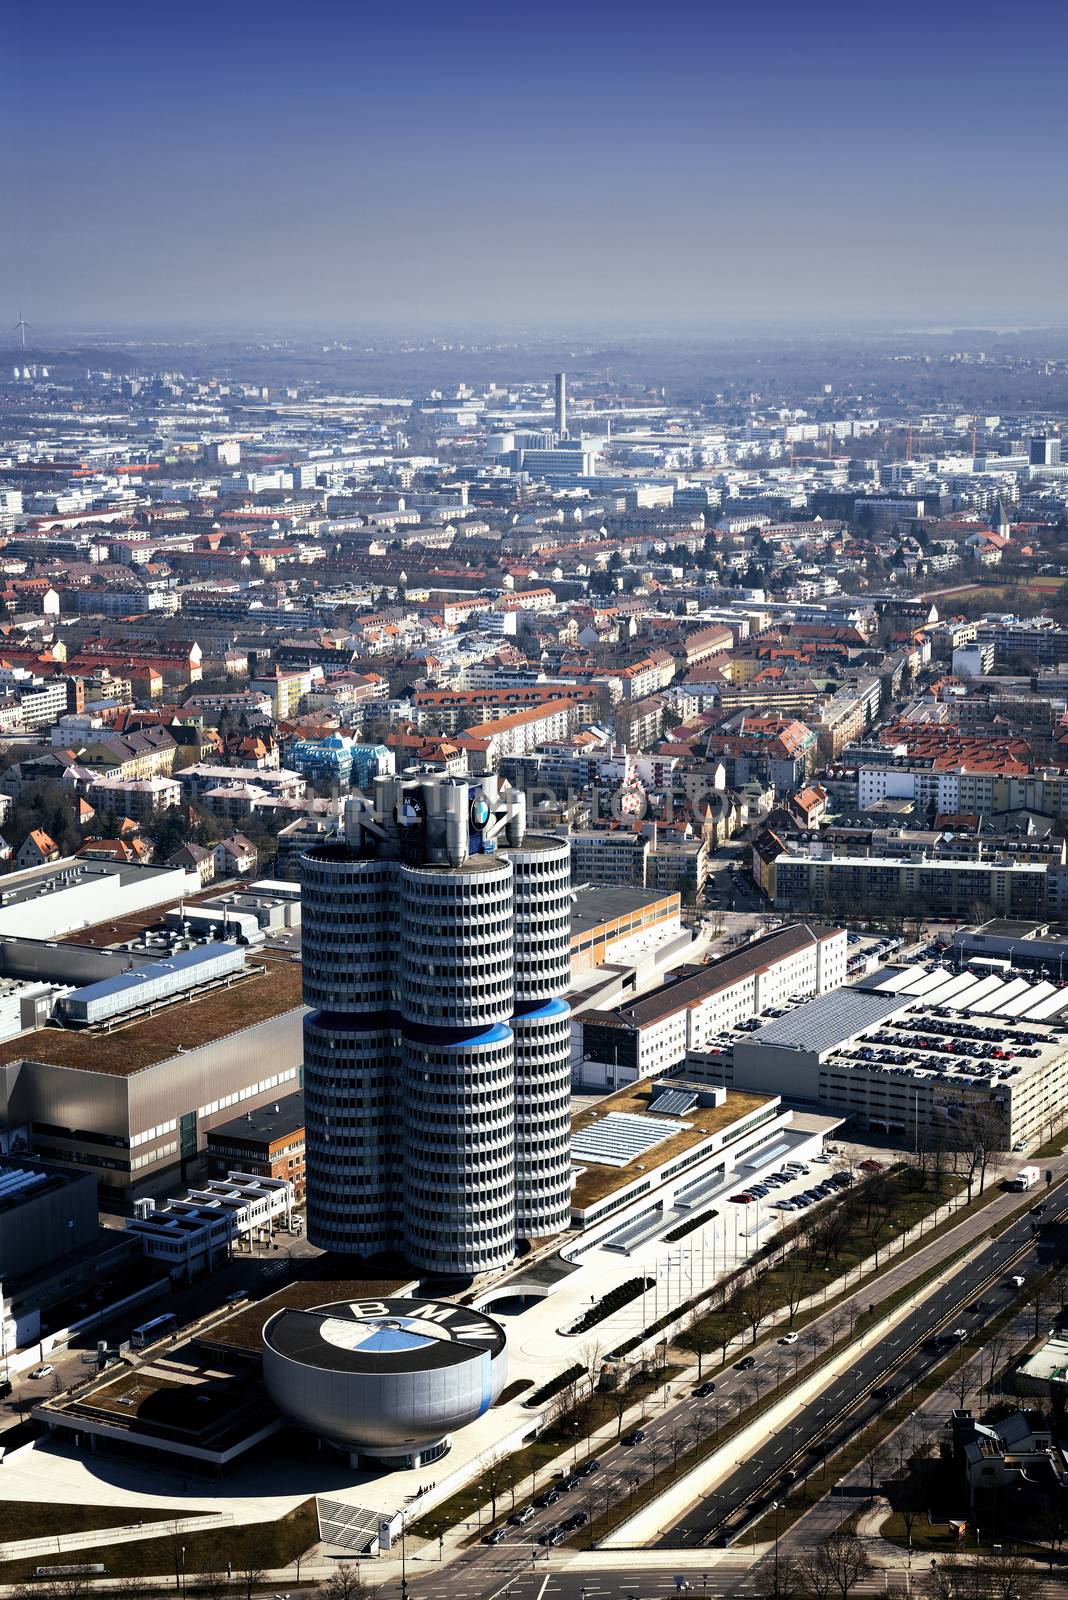 BMW Headquarter in Munchen by ventdusud